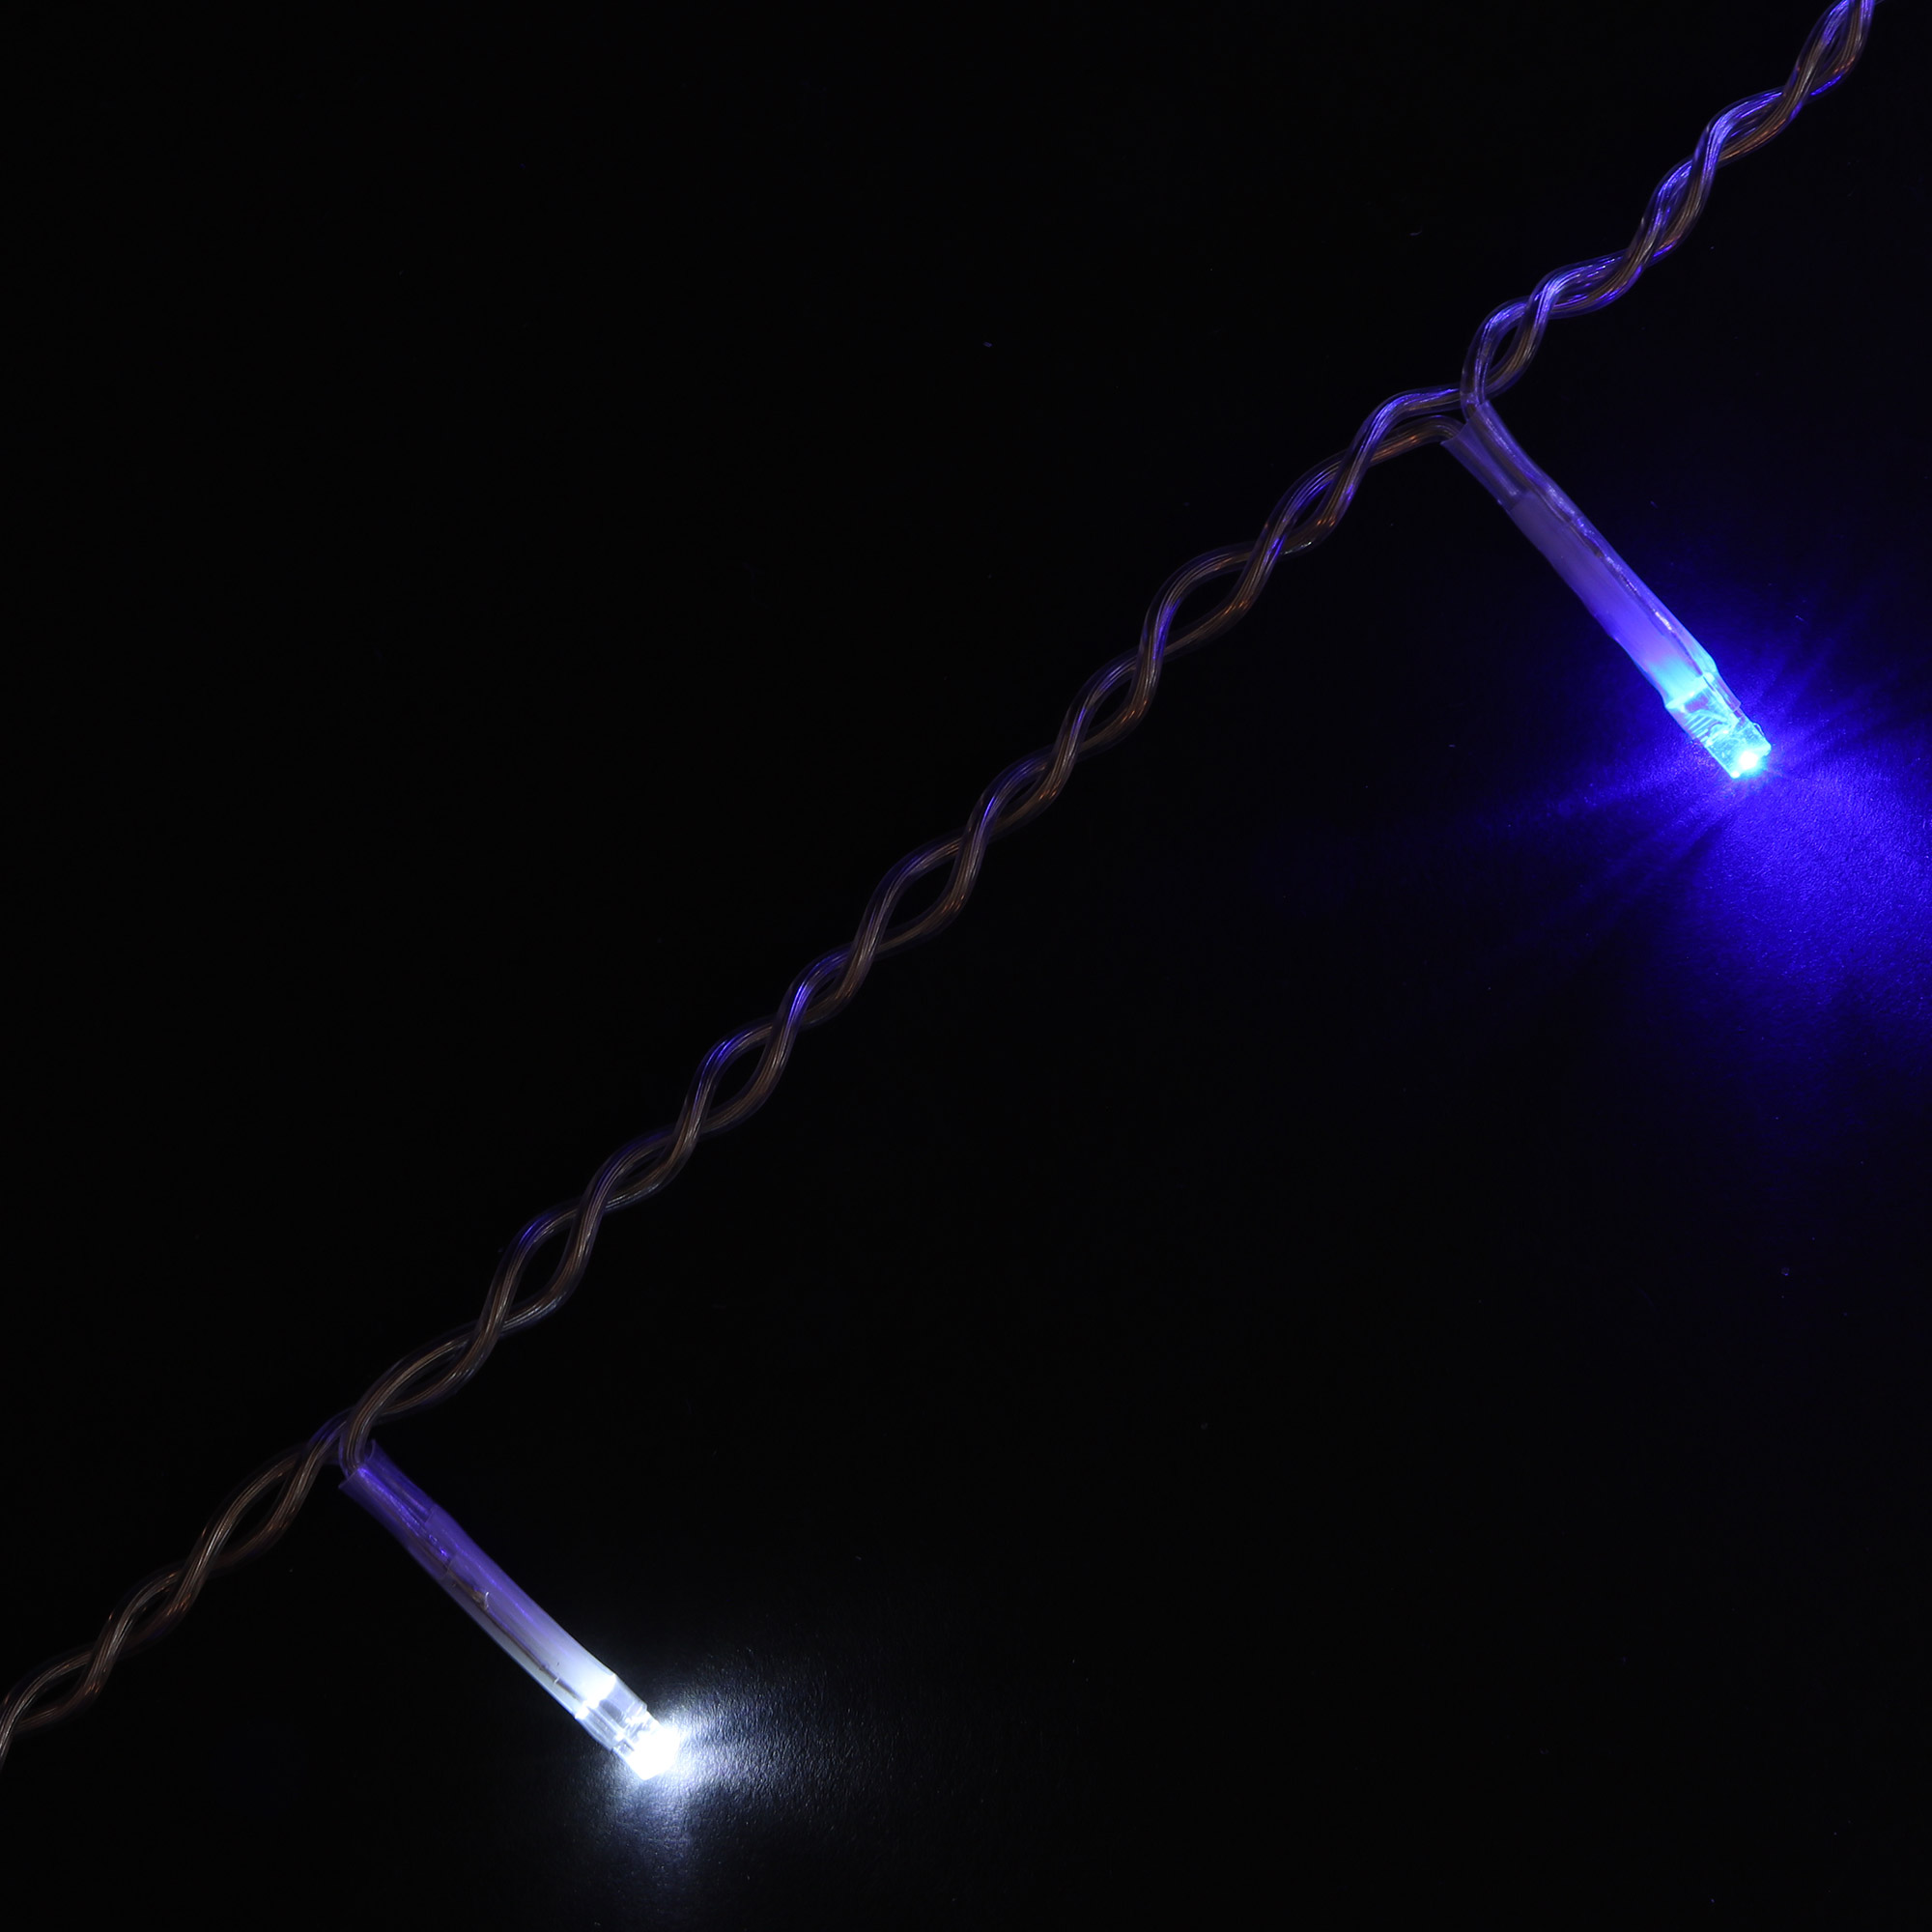 Электрогирлянда Kaemingk Занавес 7,5 м 175 LED, цвет синий - фото 3